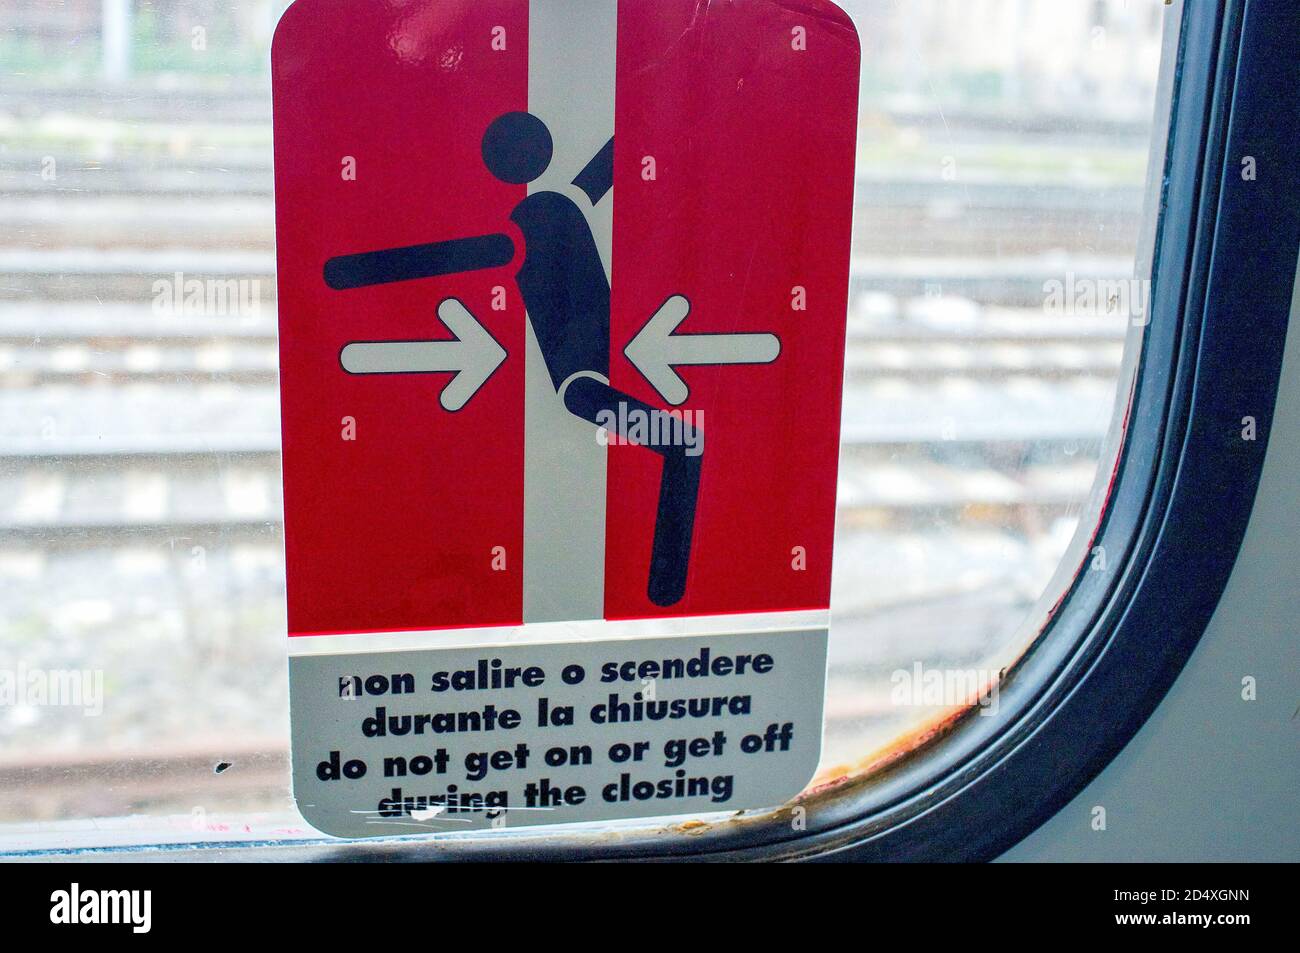 OOMF! OWWW! Das Trenitalia-Ideogramm verwendet grafisch einen soliden Leistenschlag, um die Gefahr zu veranschaulichen, in einen Zug einzusteigen, während die Türen schließen. Italien Stockfoto